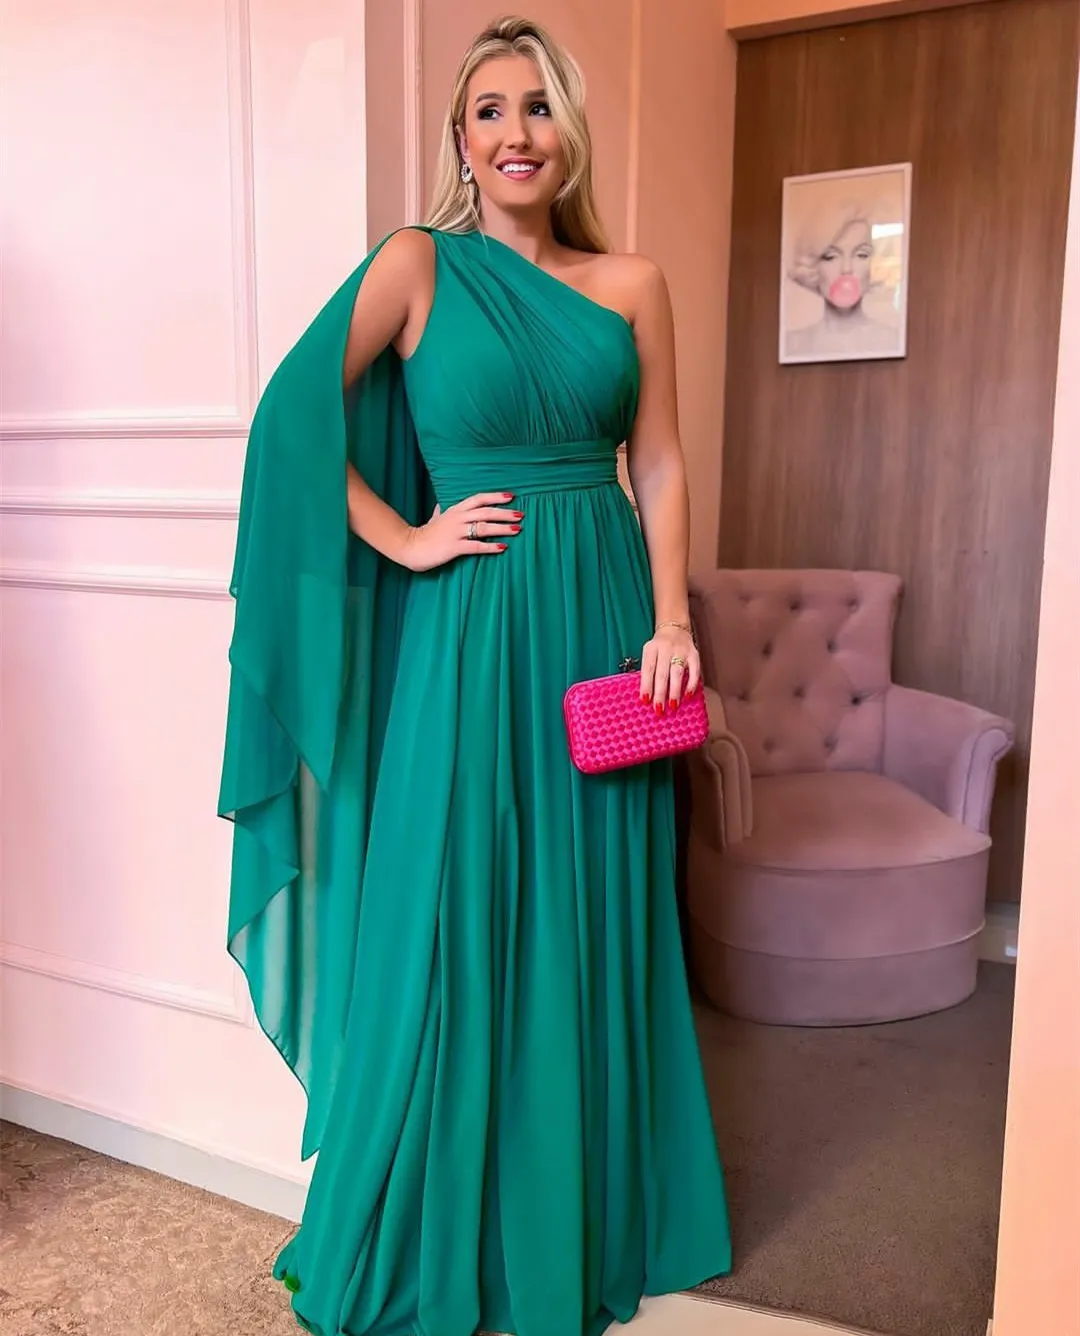 Elegant Long Green Chiffon Plissee Abendkleider mit Umhang A-Linie ein Schulterbodenboden Reißverschluss Rückenabschlussabschlussball für Frauen